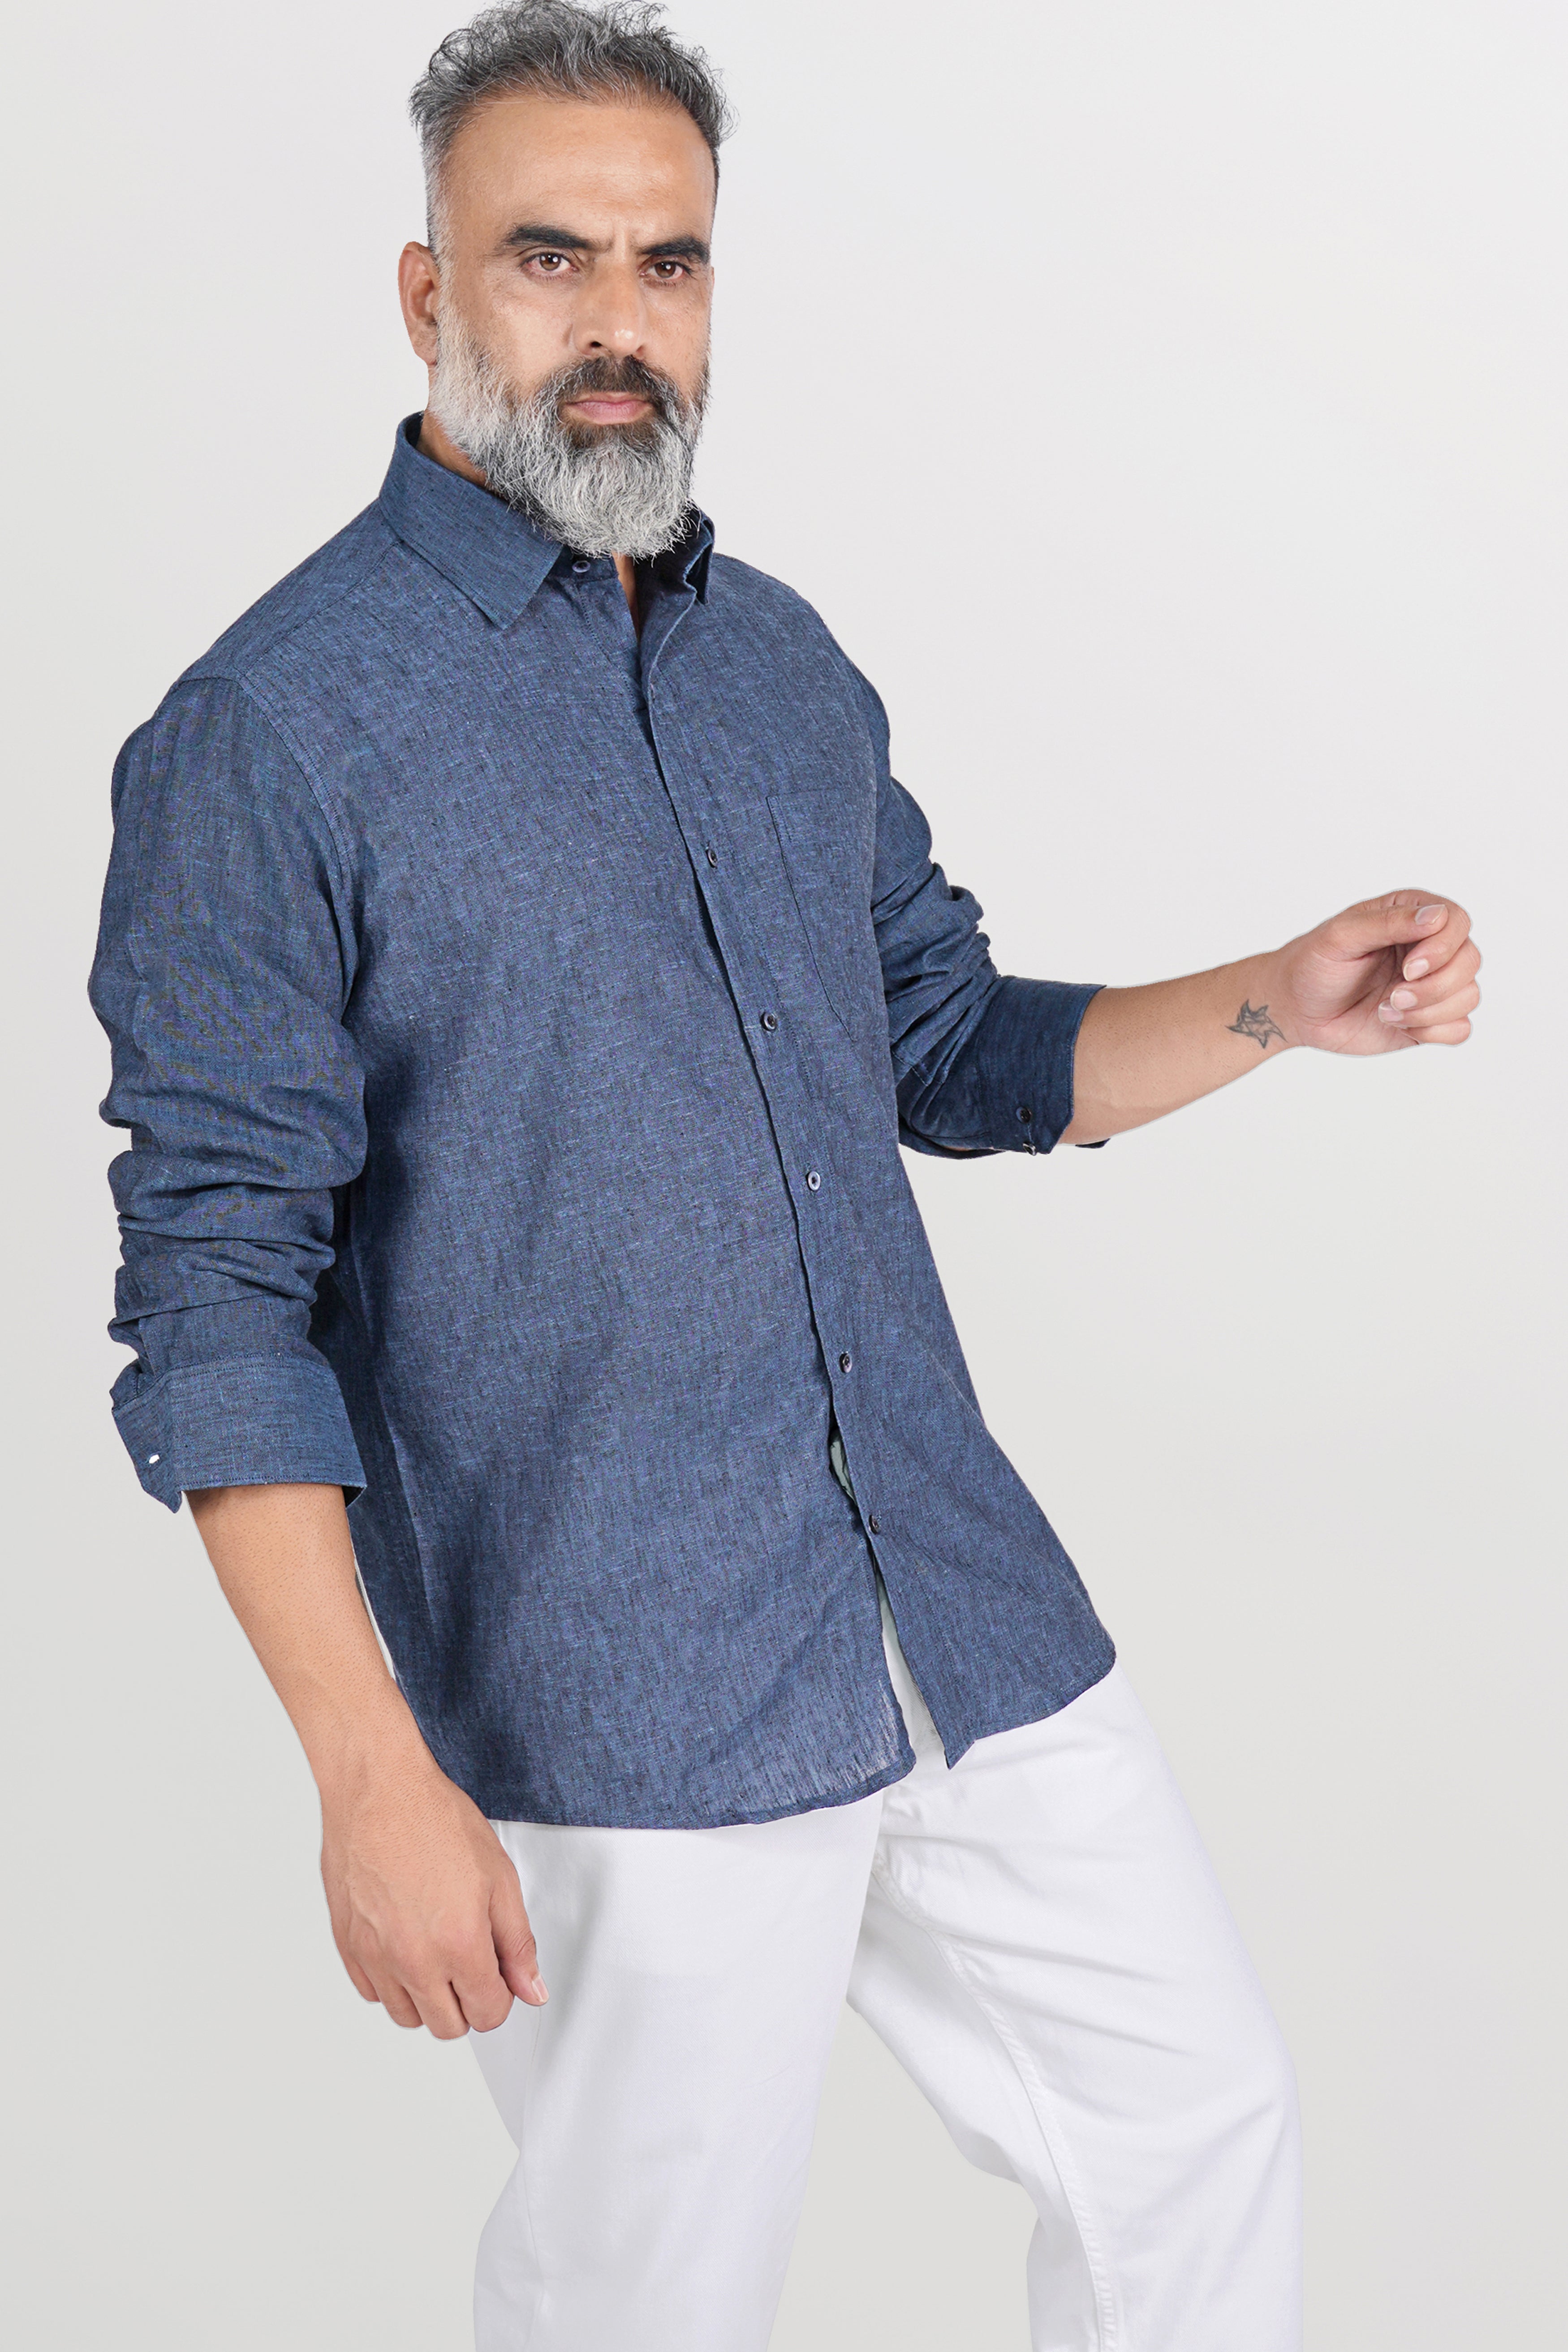 Comet Gray and Metallic Blue Luxurious Linen Shirt